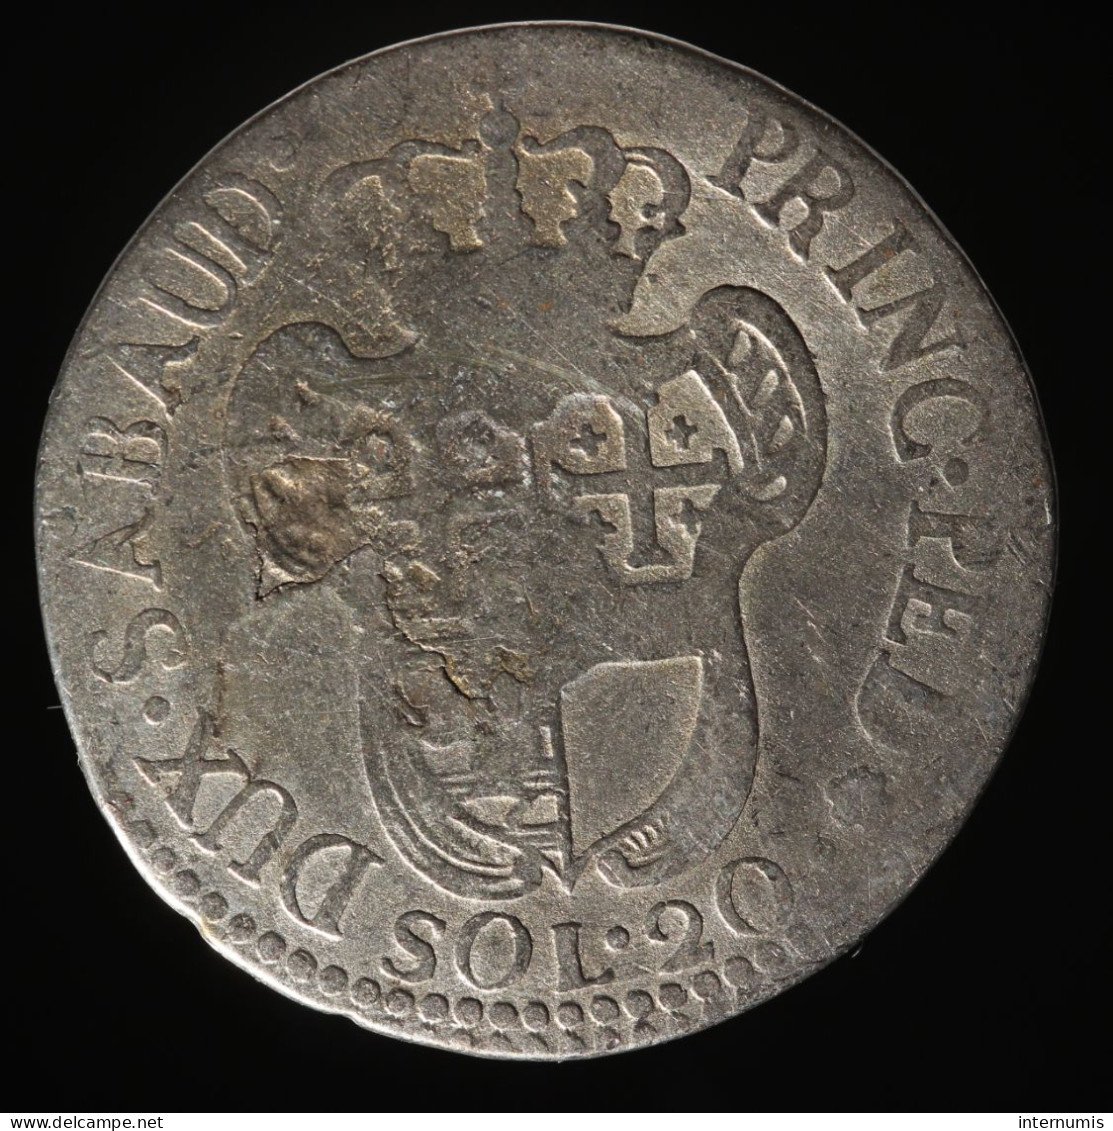  Savoie / Savoy, Victor-Amédée II, 20 Soldi, 1796, , Billon, TB (F),
KM#94, MIR# 990  - Piemonte-Sardinië- Italiaanse Savoie